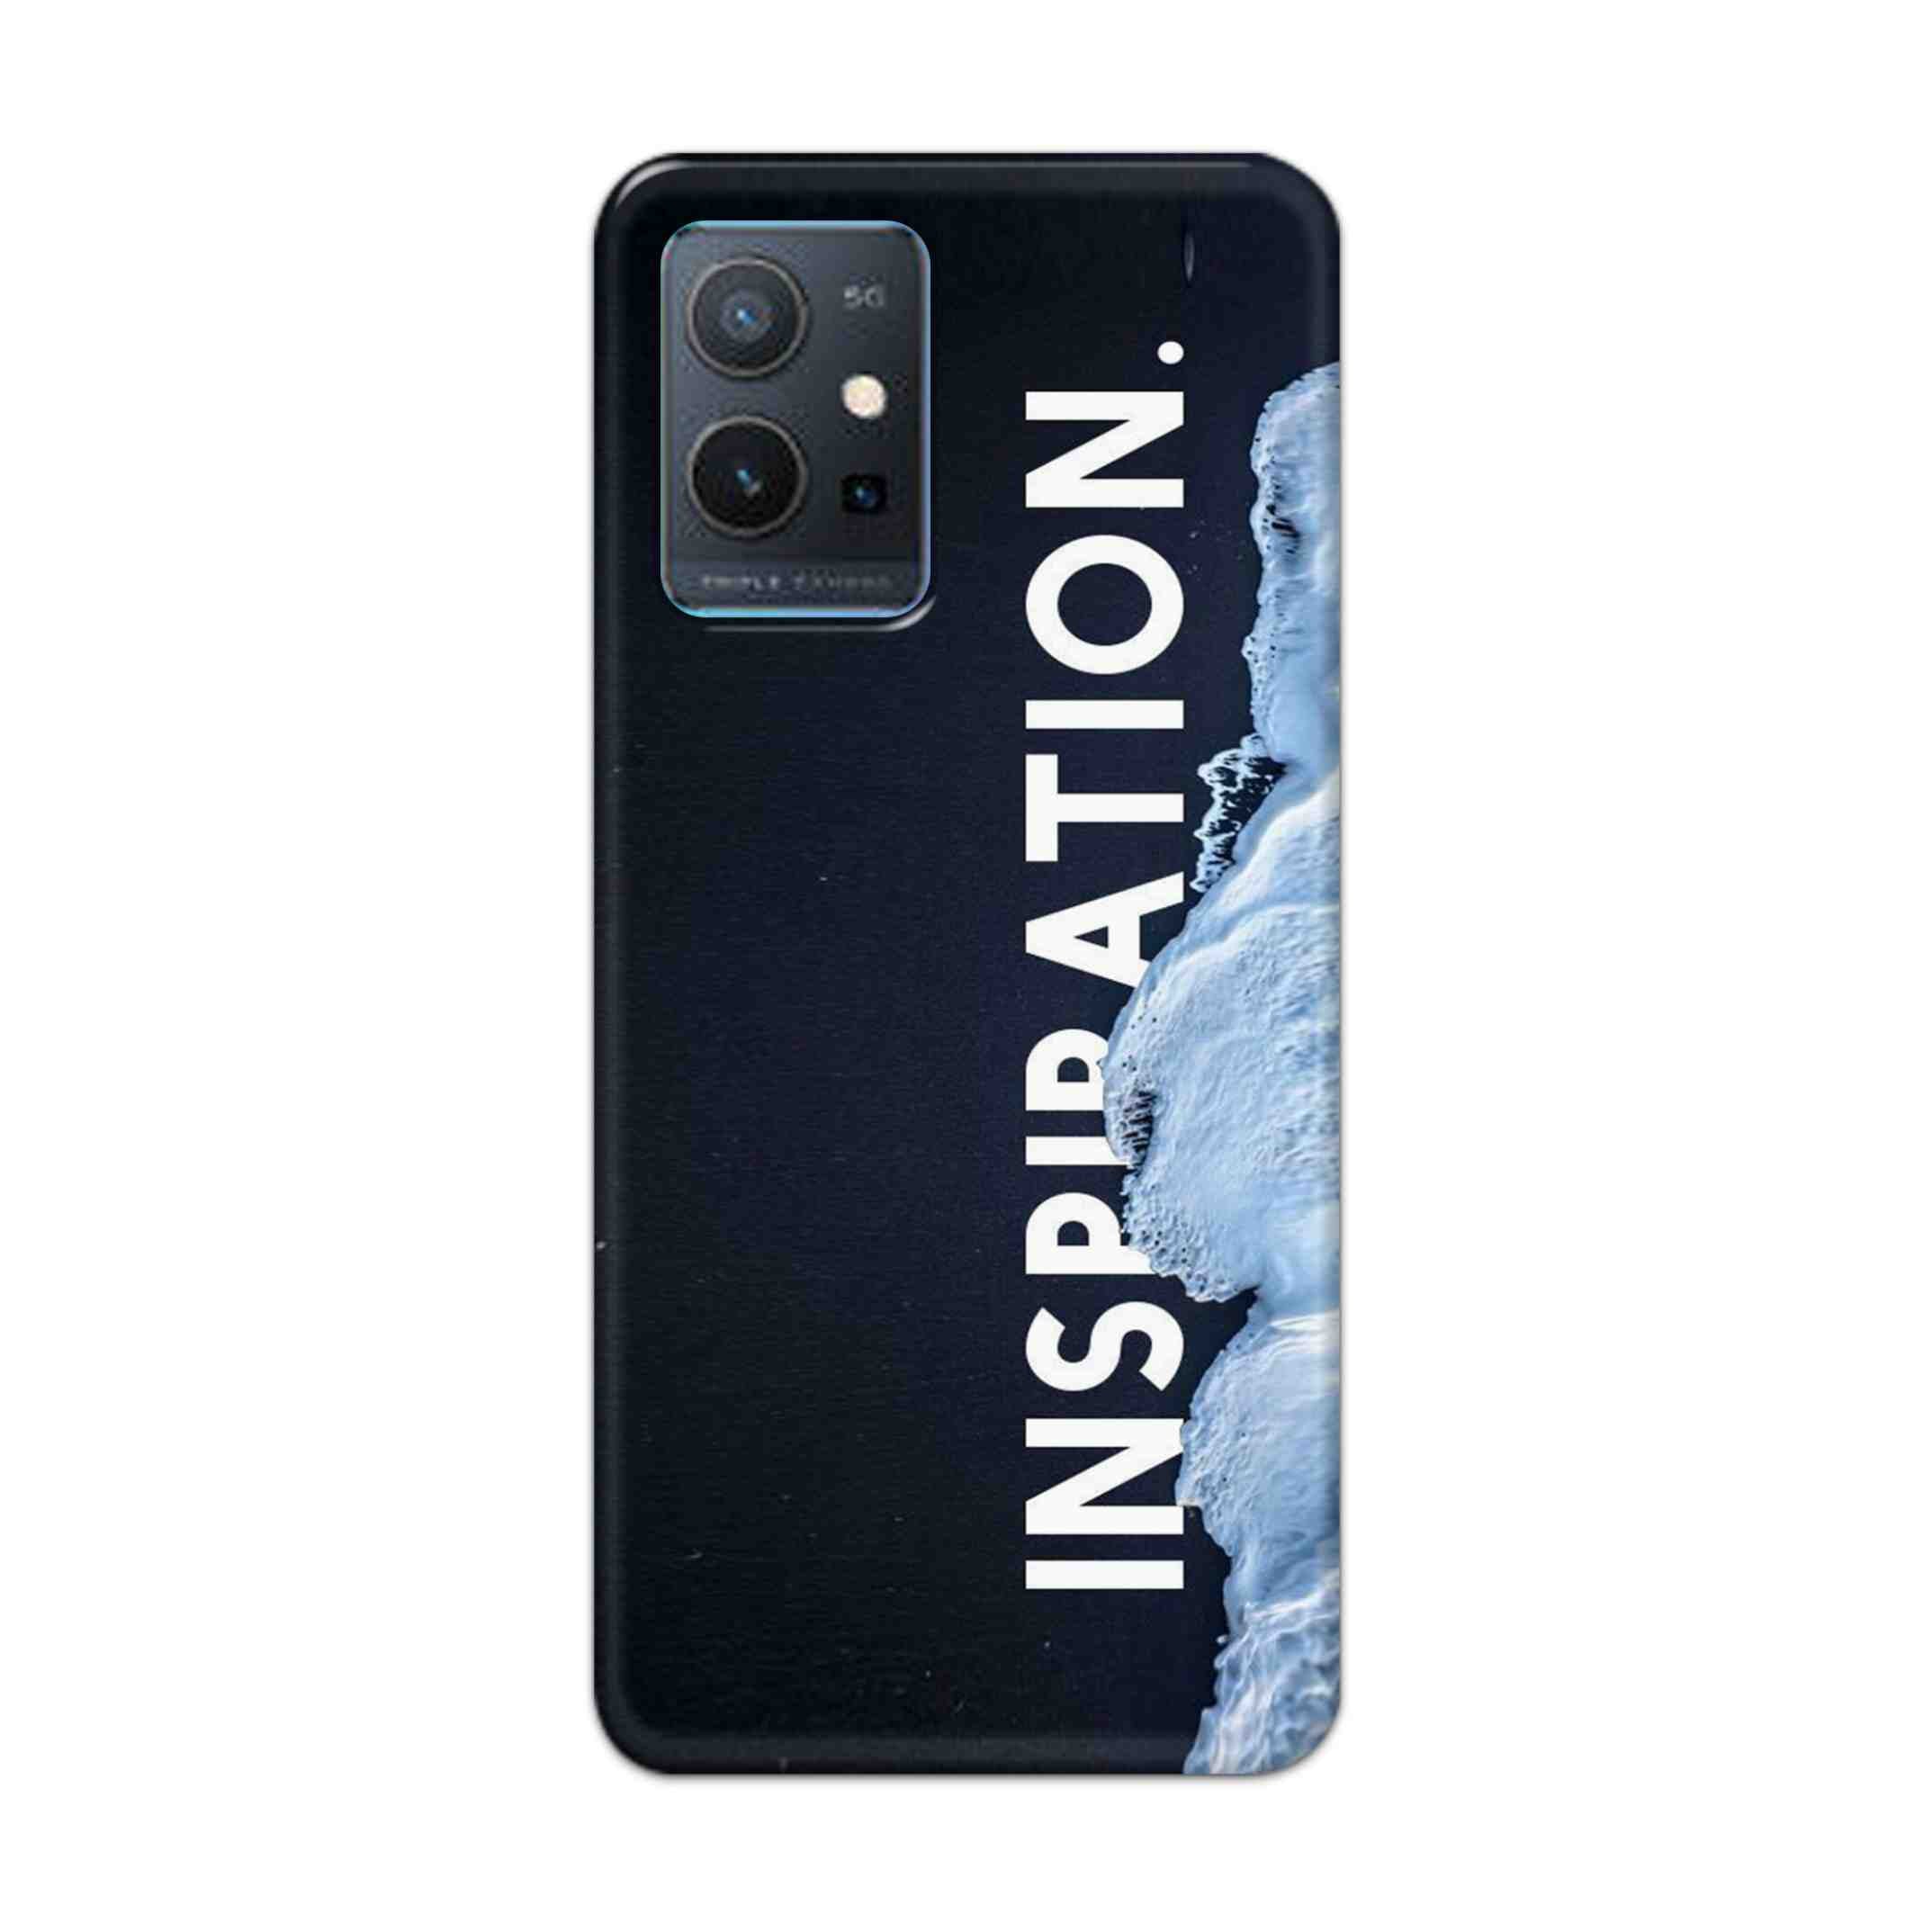 Buy Inspiration Hard Back Mobile Phone Case Cover For Vivo Y75 5G Online